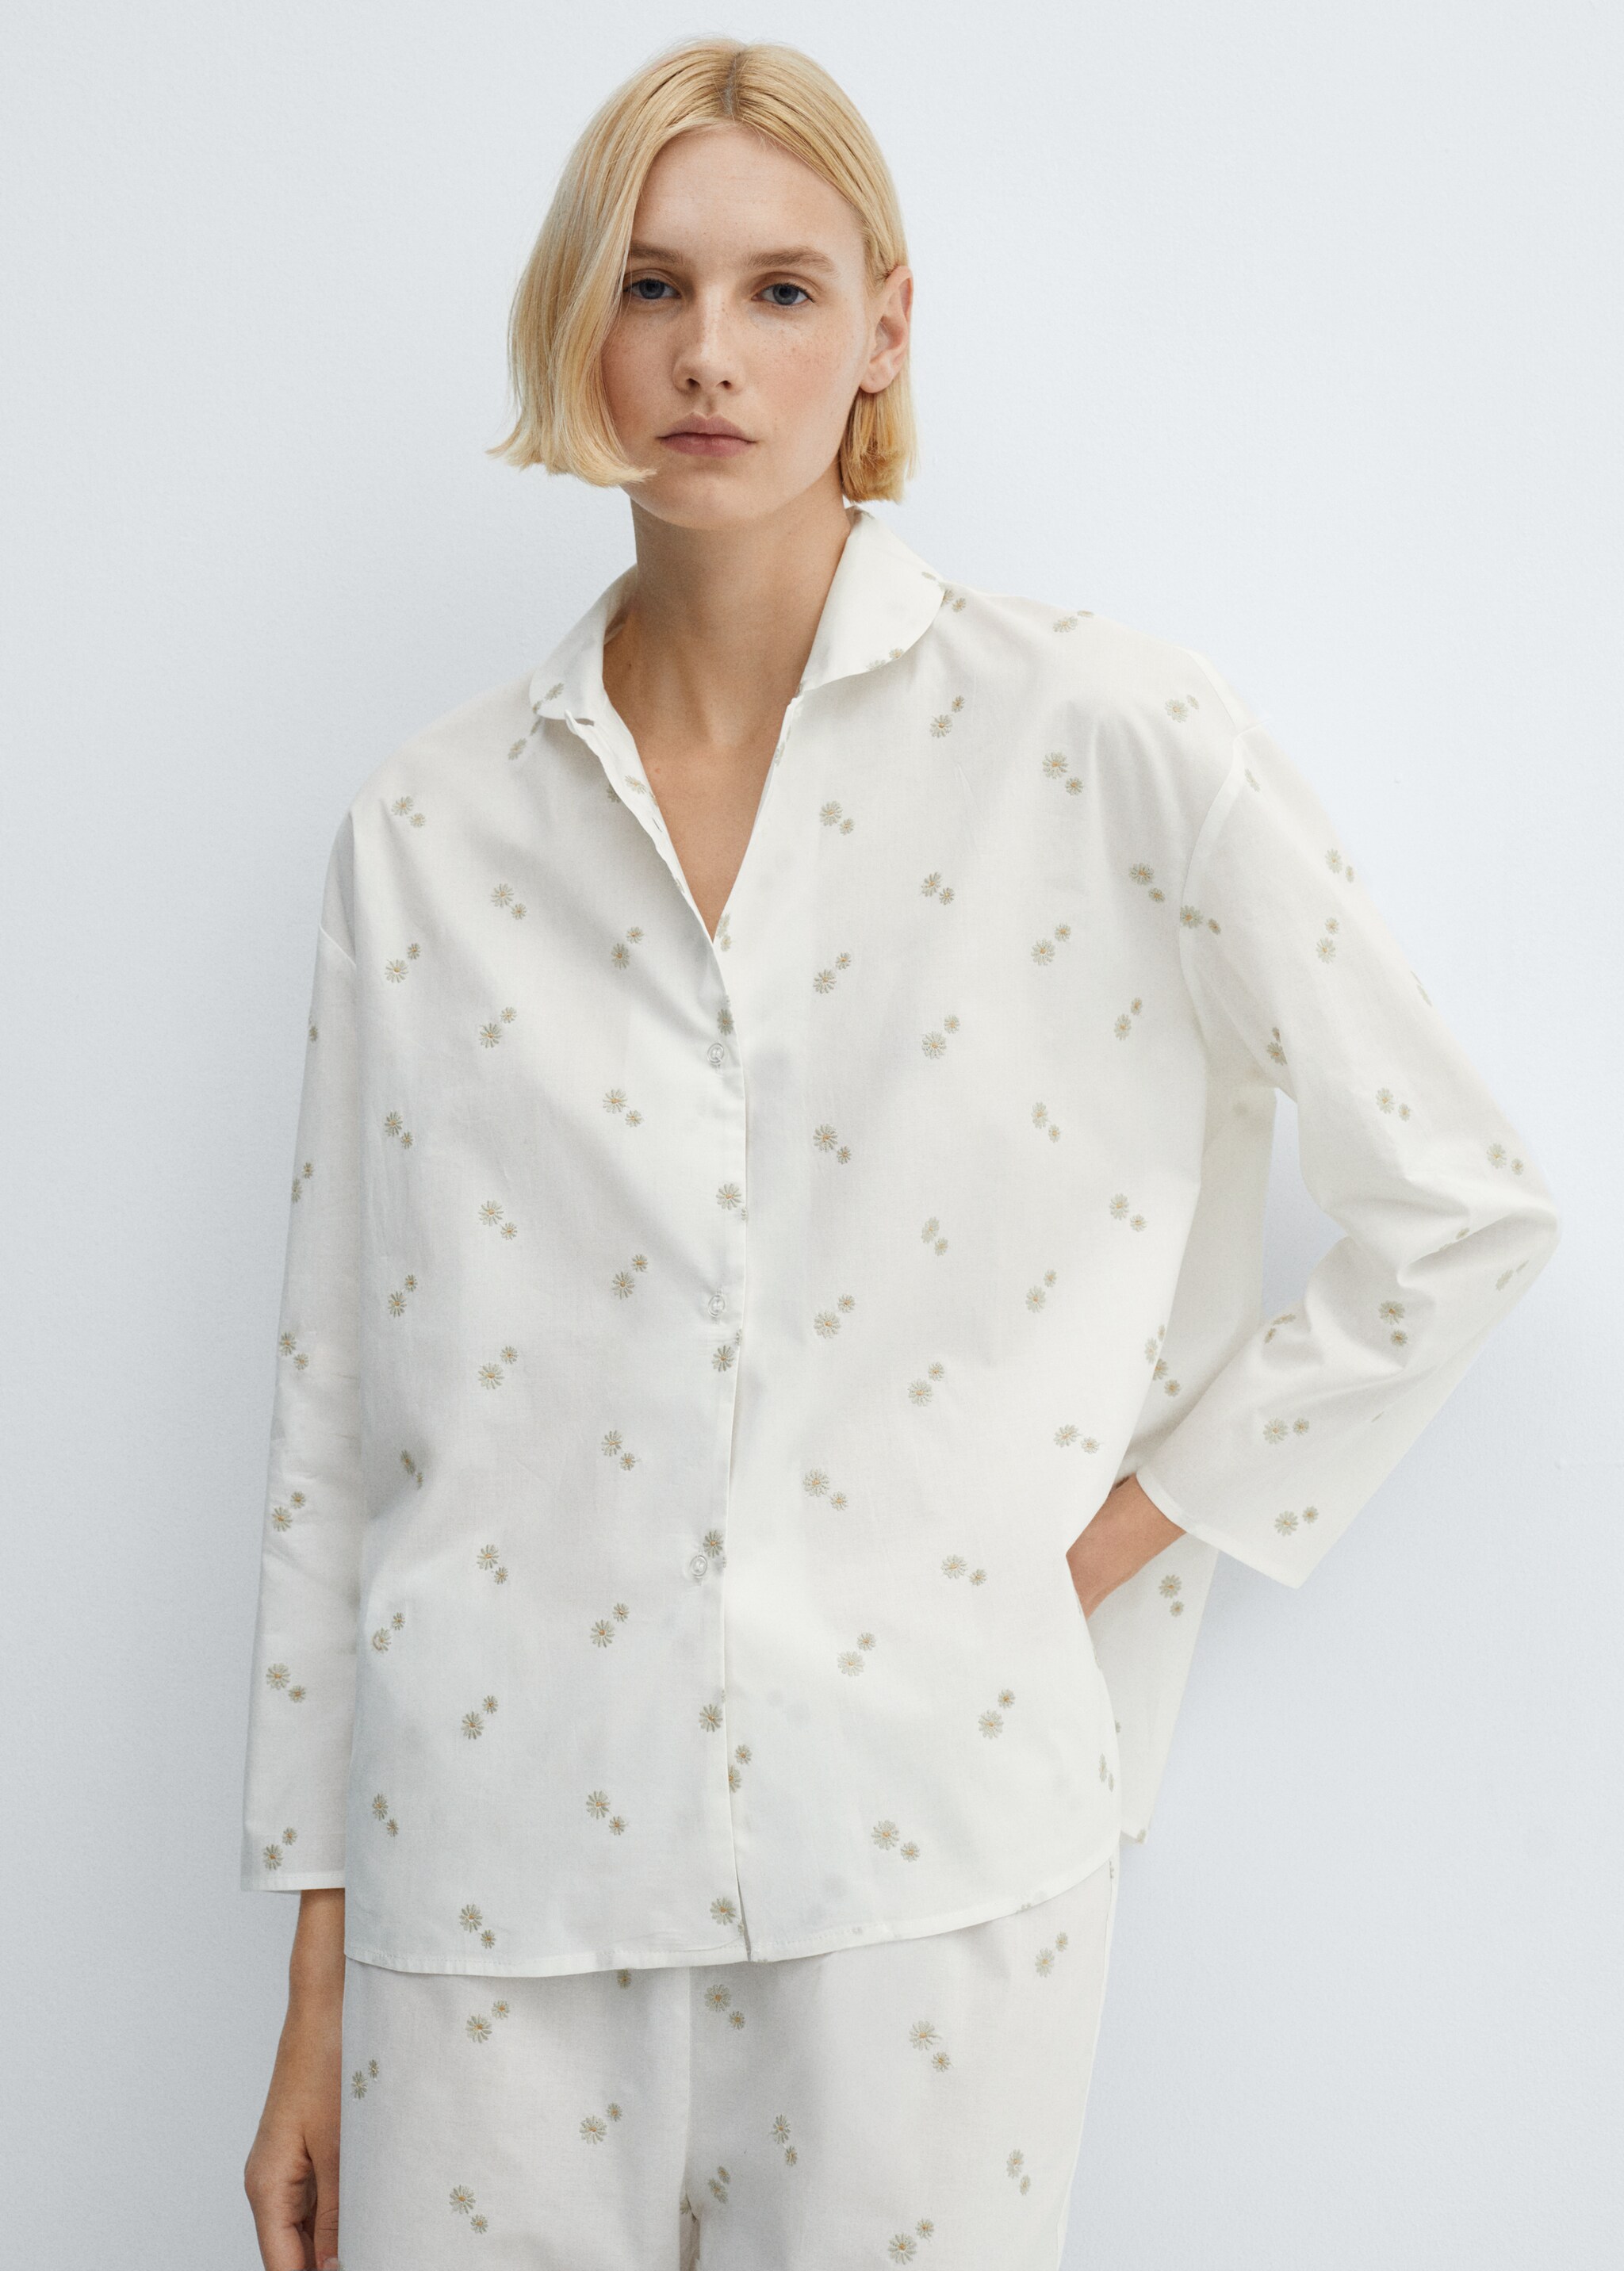 Пижамная рубашка из хлопка с цветочной вышивкой - Средний план